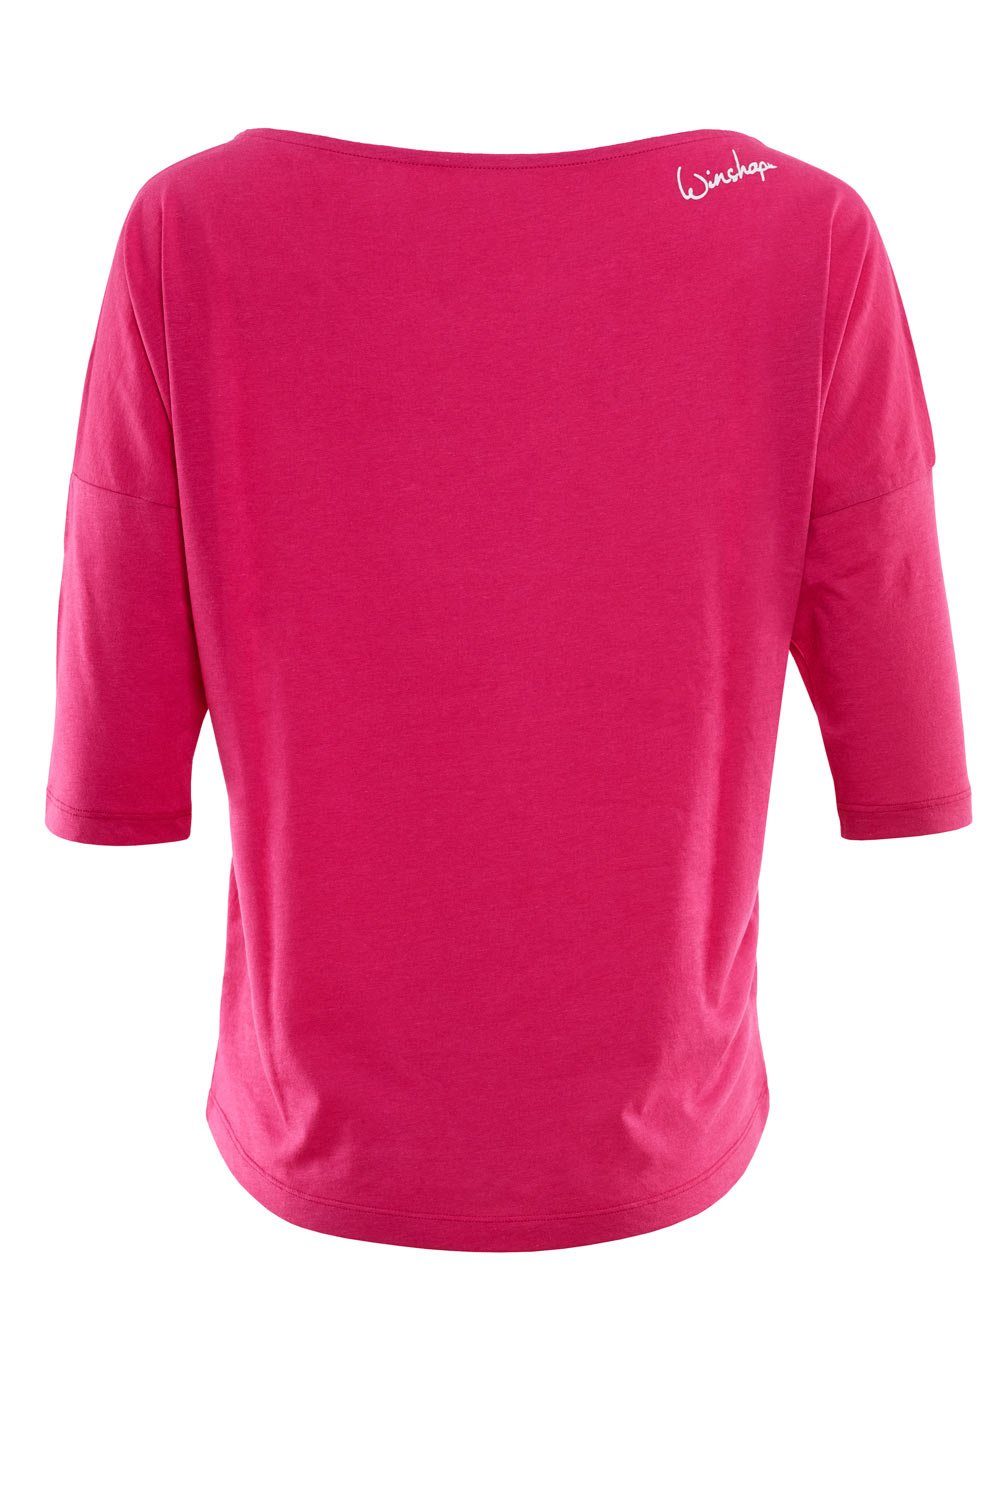 Winshape 3/4-Arm-Shirt MCS001 ultra leicht deep weißem mit - weiß pink glitzer Glitzer-Aufdruck